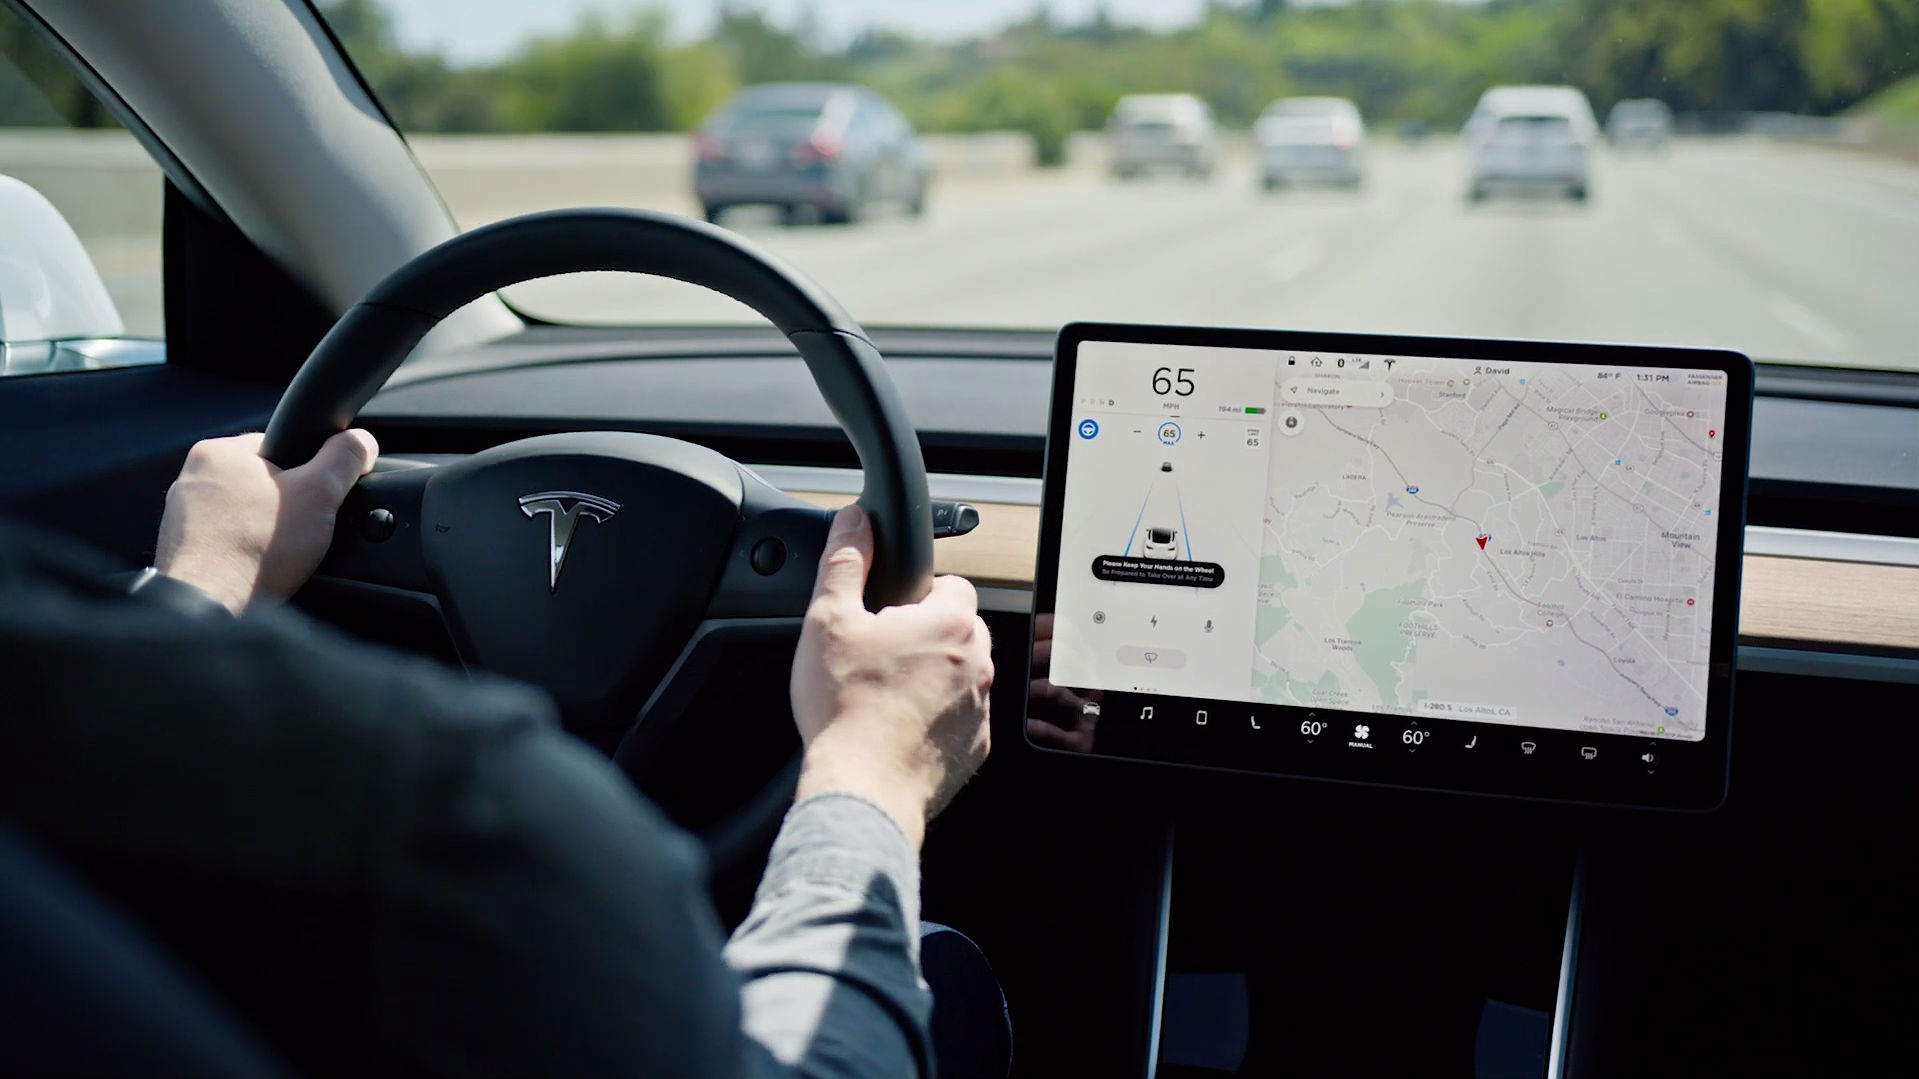 Tesla’s Autopilot probe worries Morgan Stanley with ‘reputational risks’